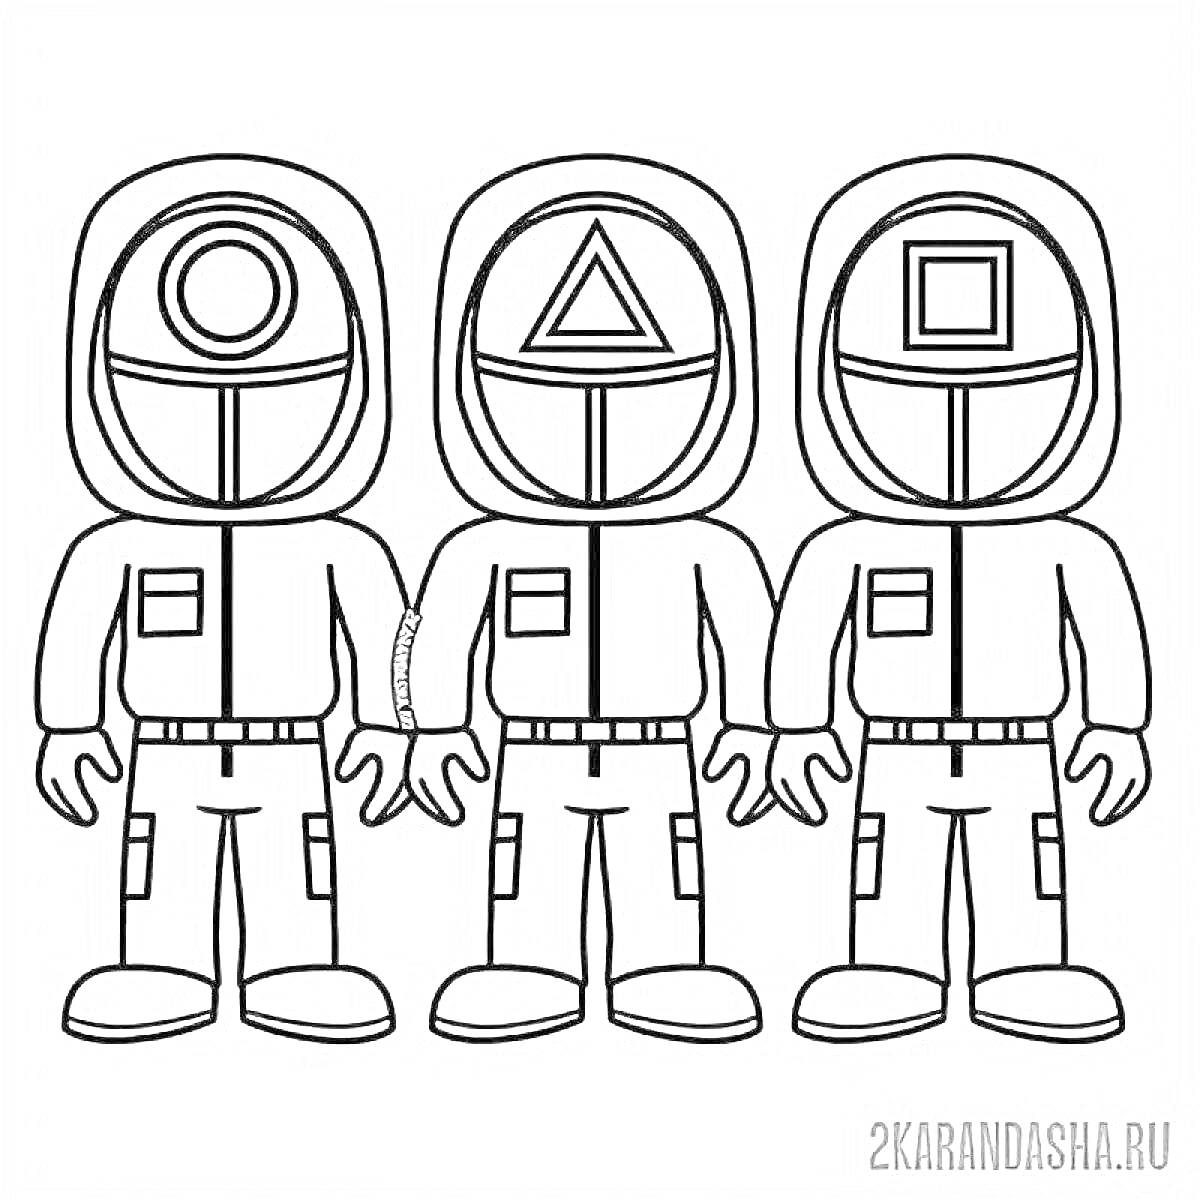 Раскраска Три охранника из игры в кальмара со значками круг, треугольник и квадрат на шлемах